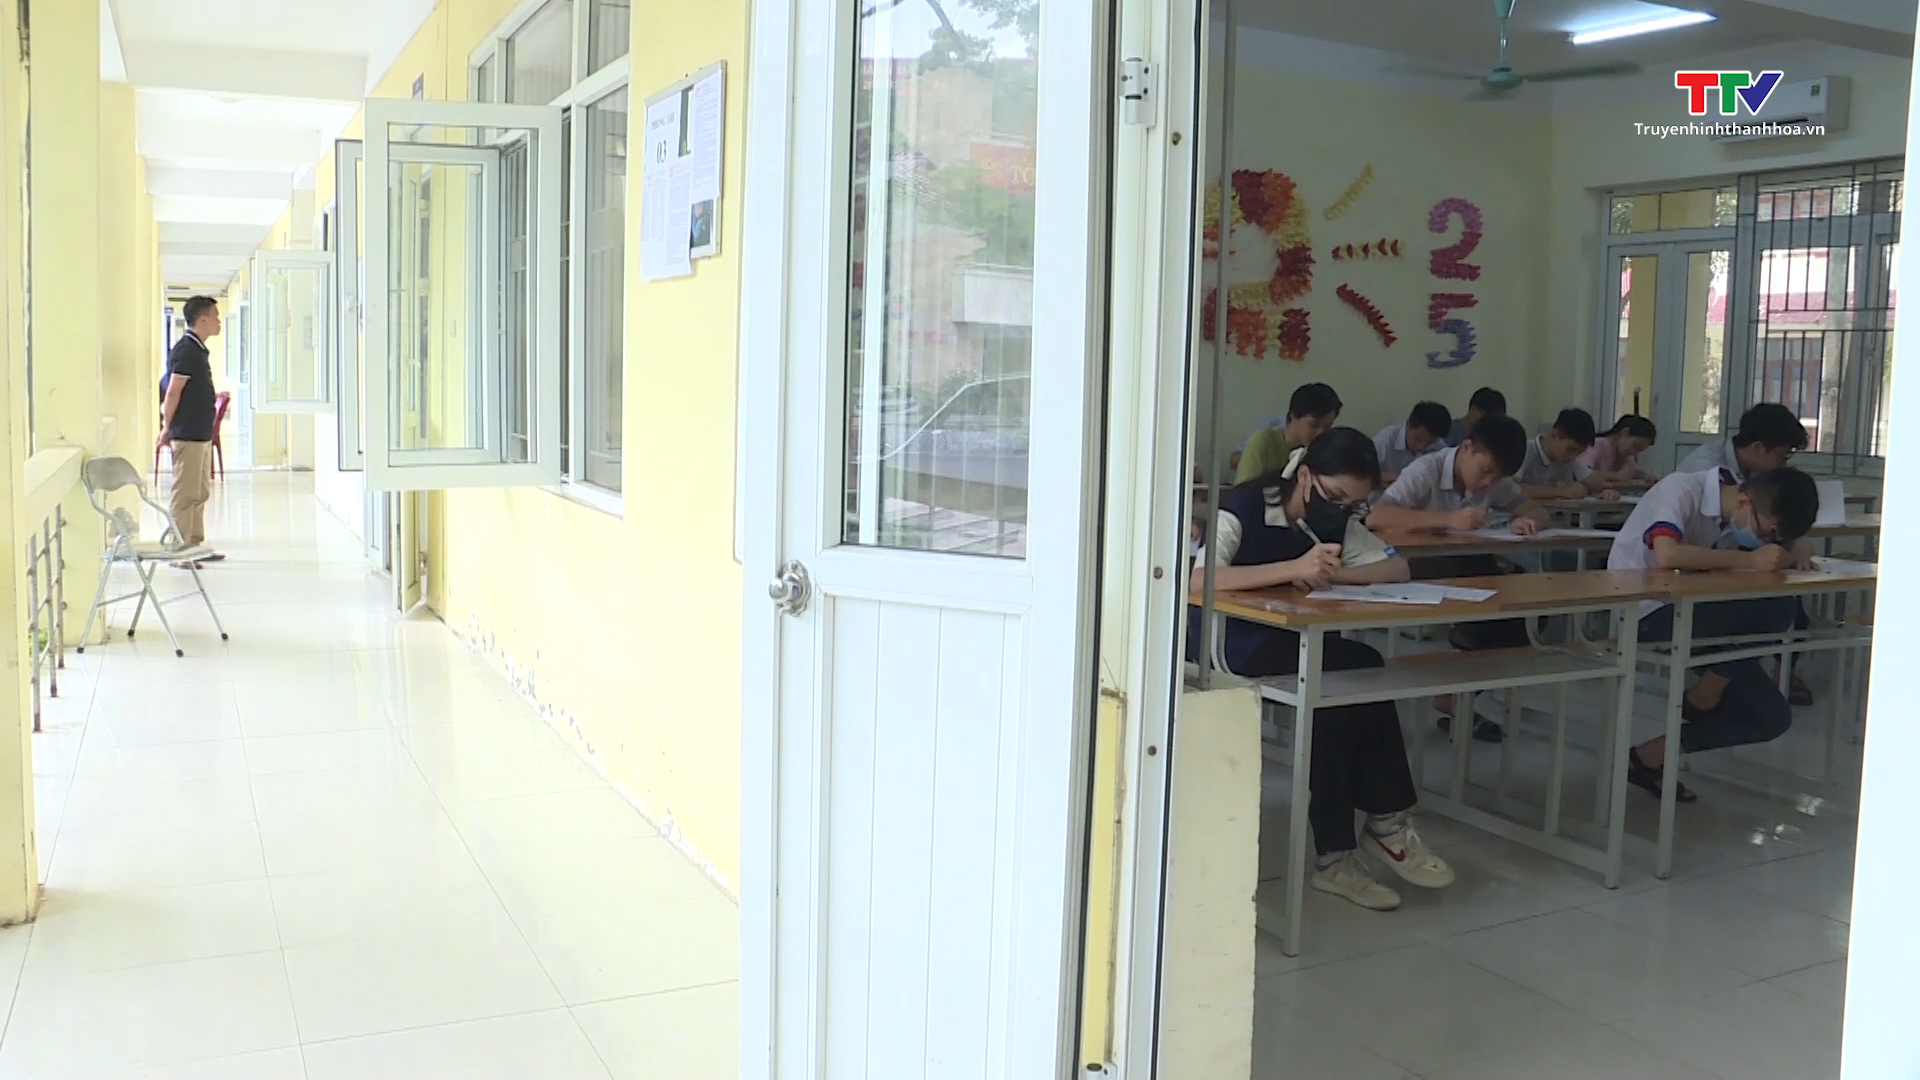 1 thí sinh vi phạm quy chế trong ngày thi đầu tiên vào lớp 10 trường Trung học phổ thông chuyên Lam Sơn - Ảnh 3.